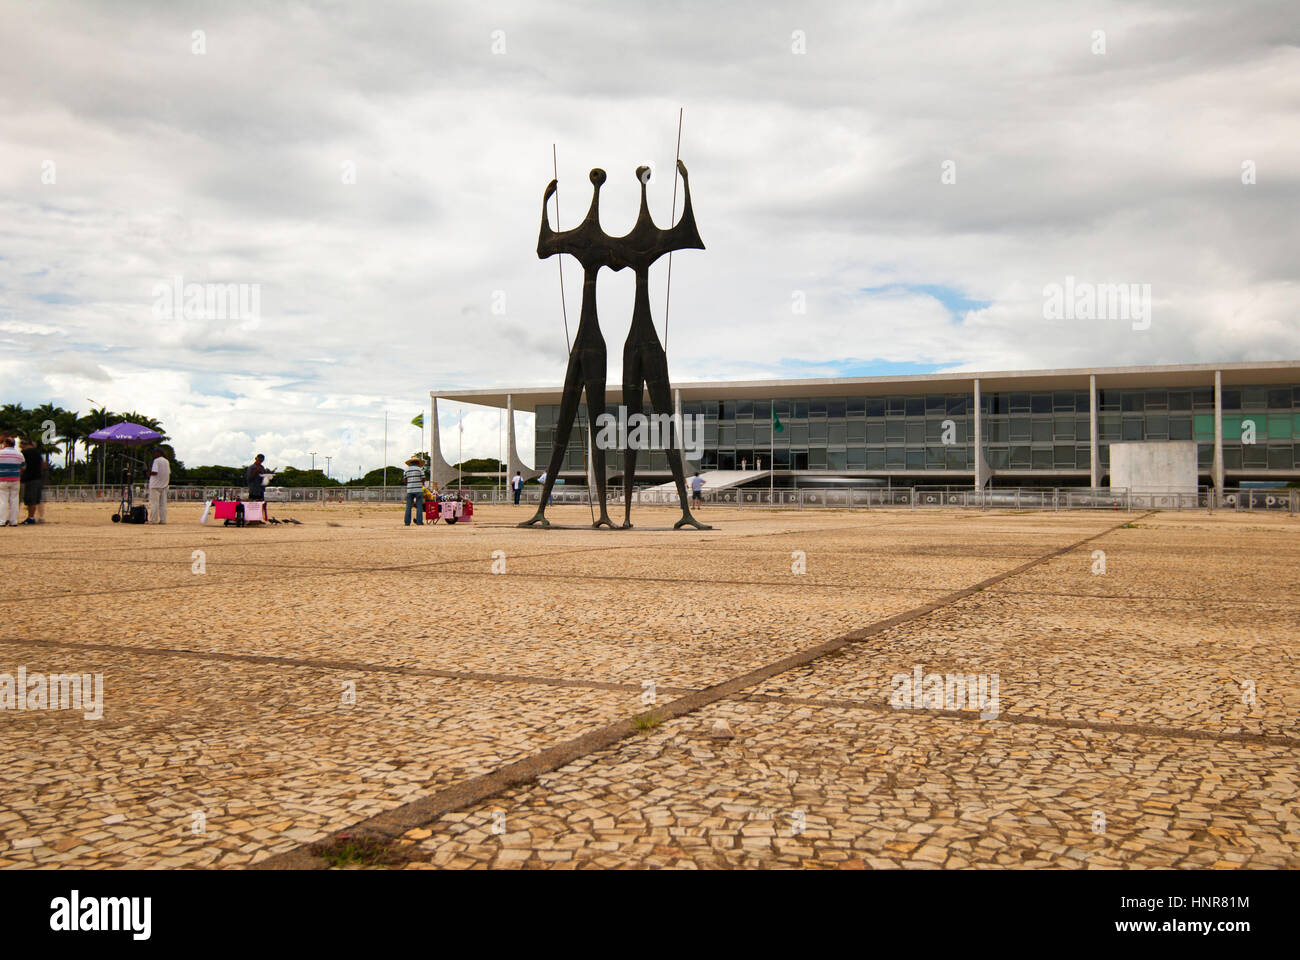 "La sculpture des guerriers, Brasilia, Brésil Banque D'Images